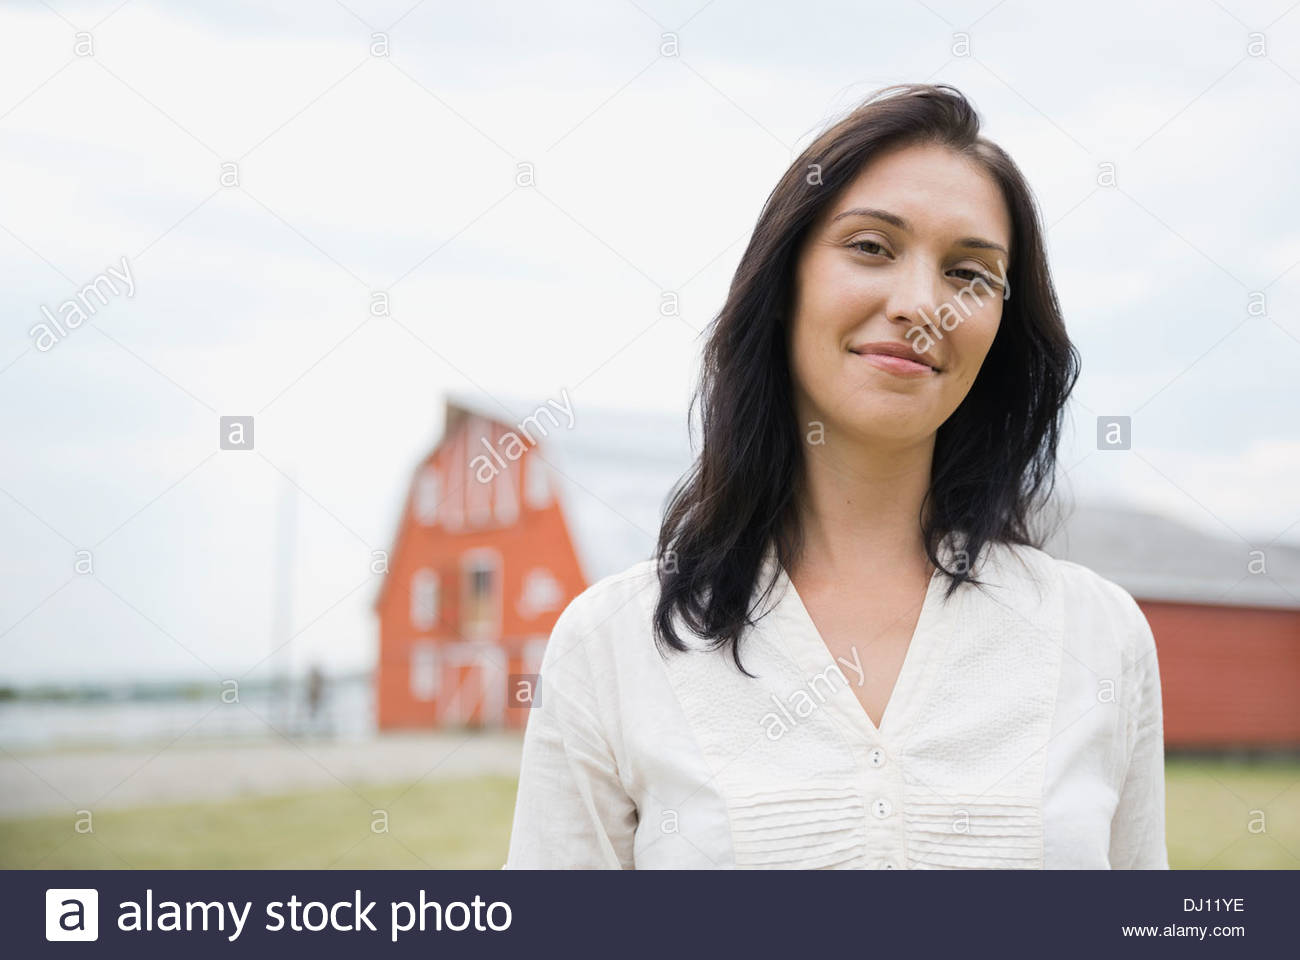 Retrato de seguros de Mujer de pie afuera Foto de stock